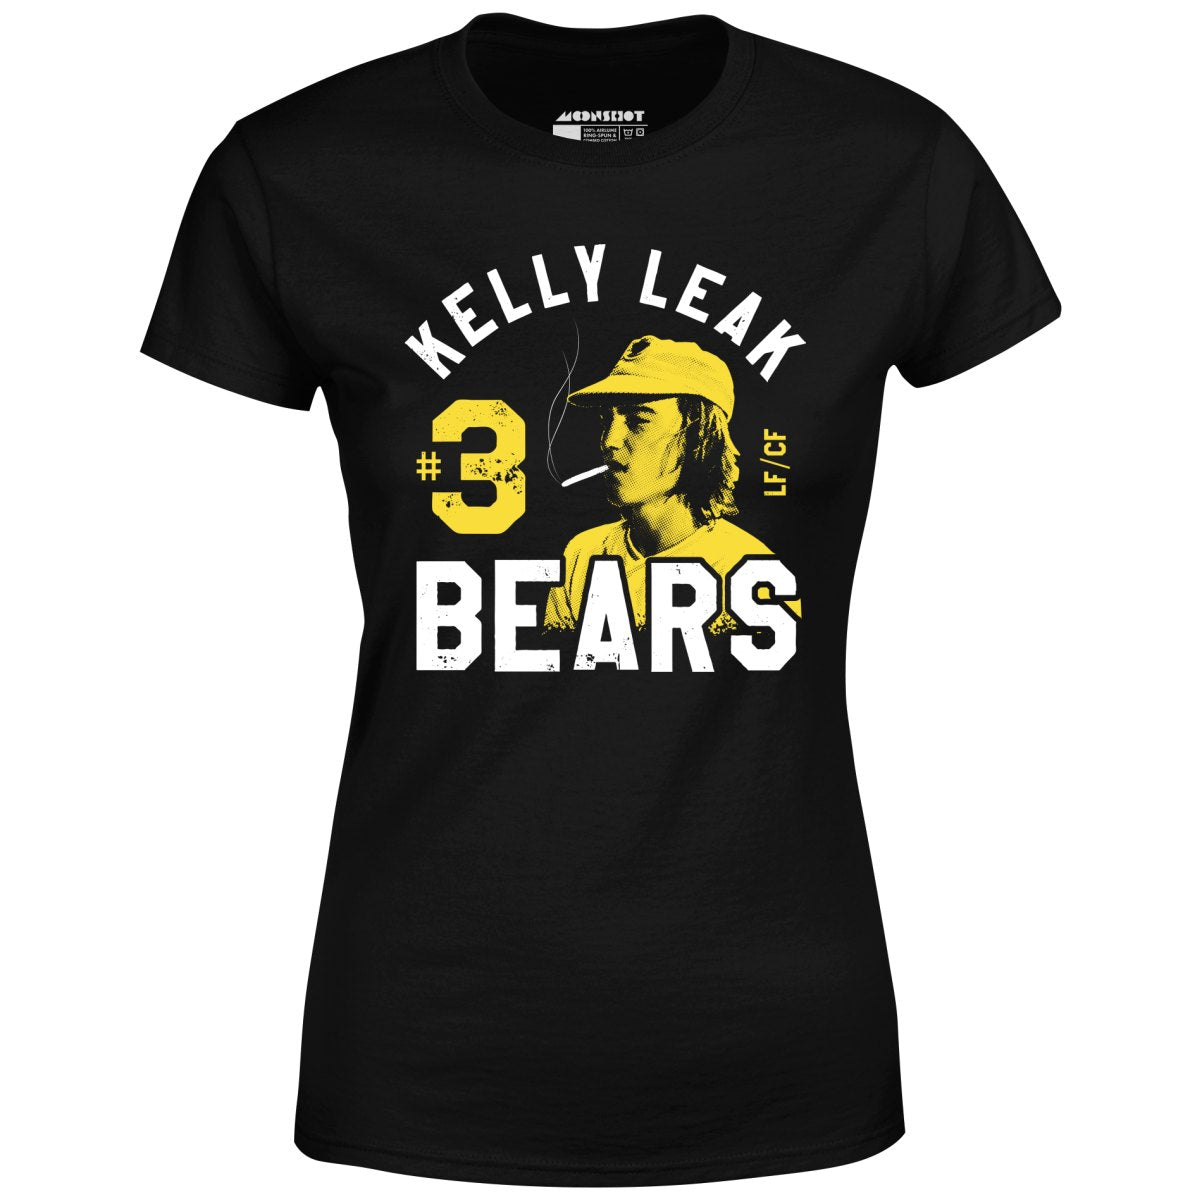 Kelly Leak #3 Bears - Women's T-Shirt